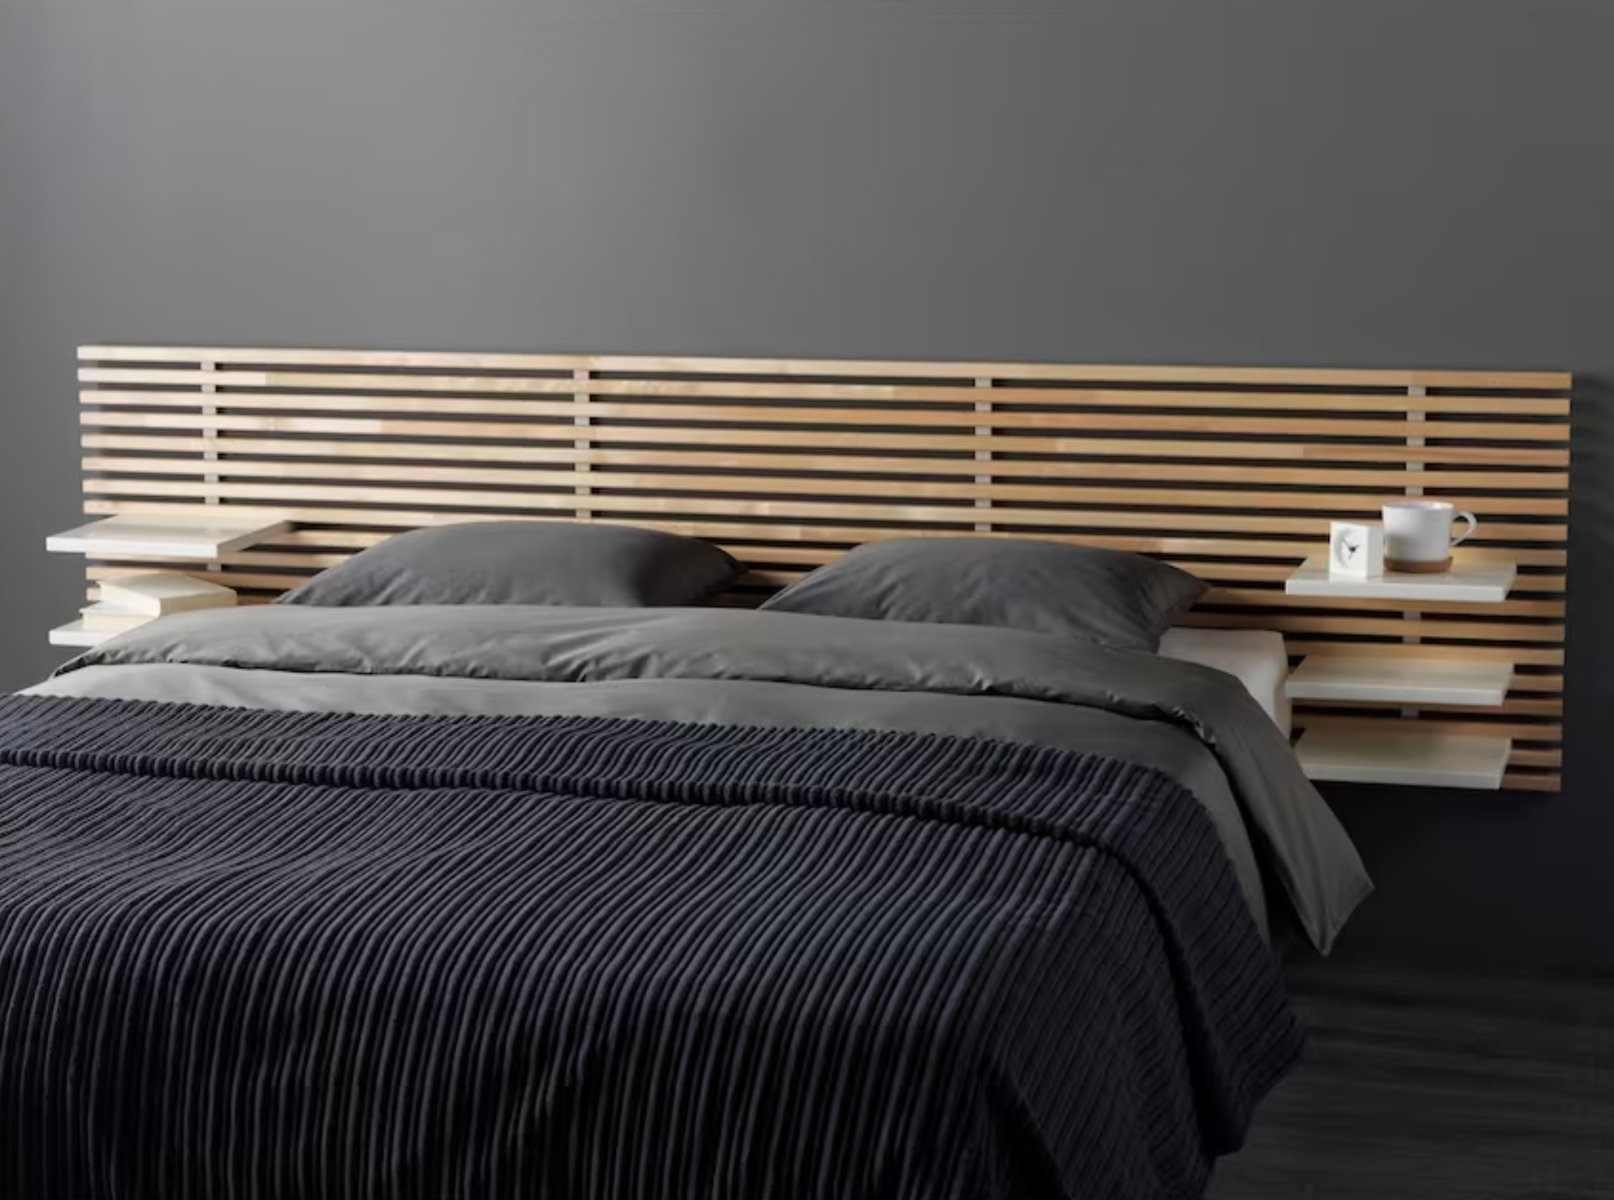 Cabeceros de cama originales para tu dormitorio - Foto 1